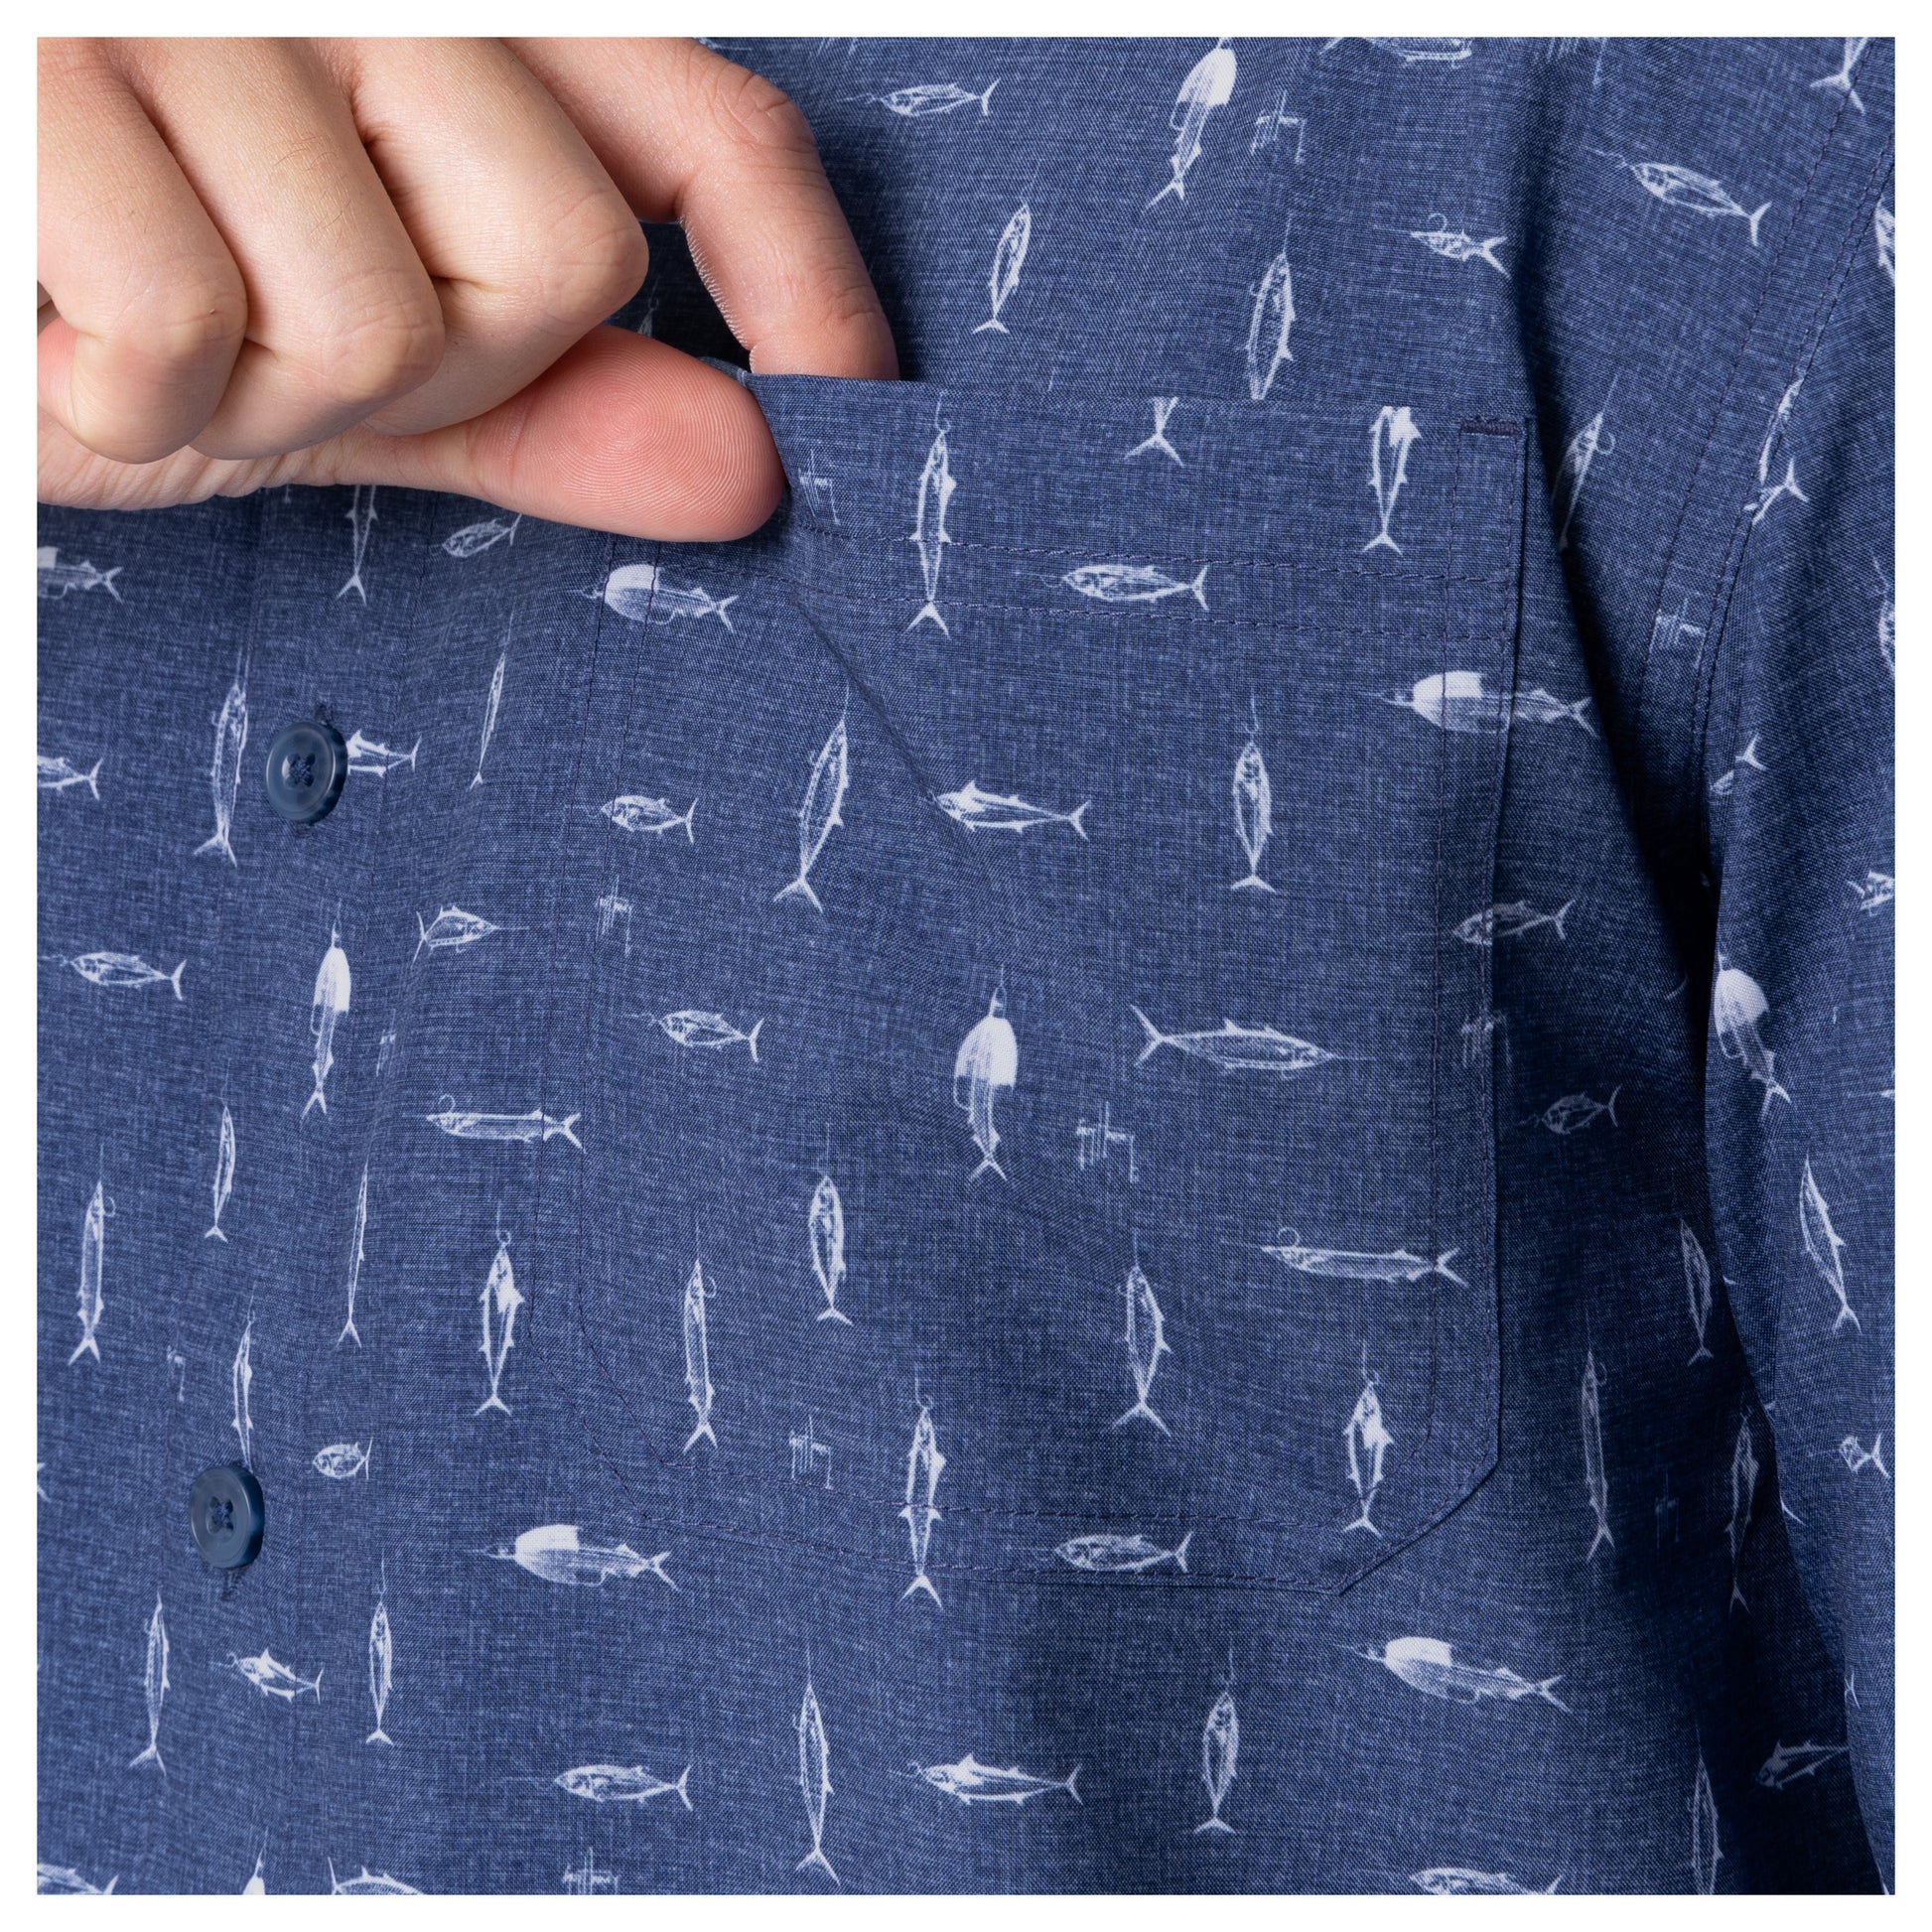  HOURVNEI Men'S Short Sleeve Fishing Dress Shirt Button